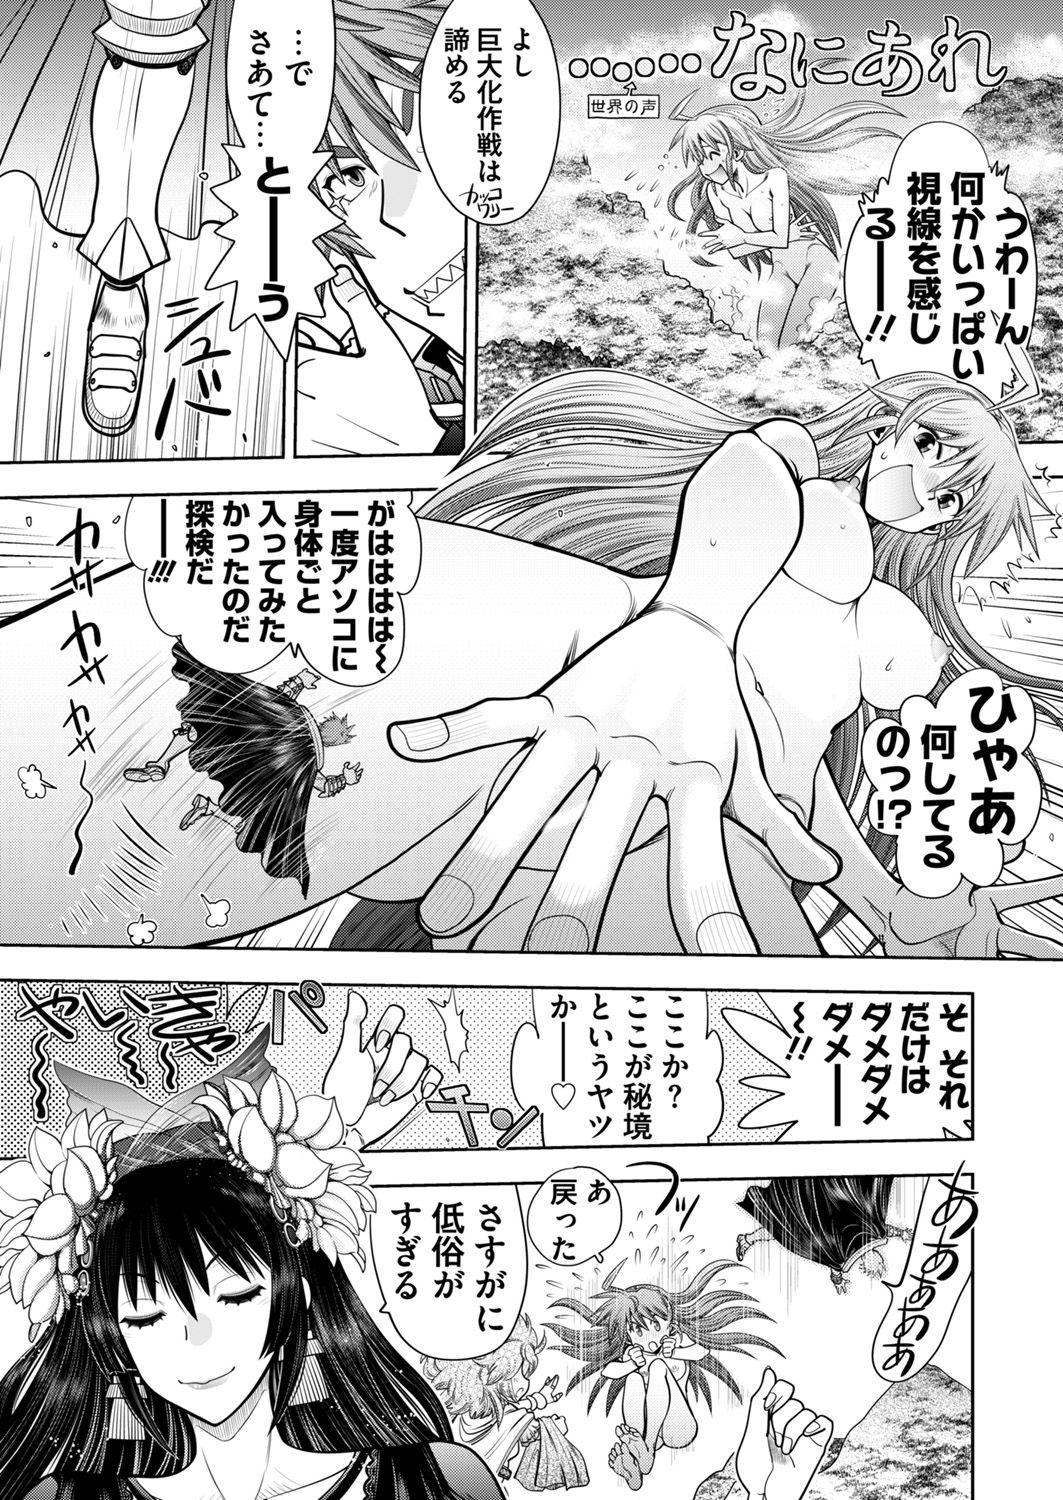 Femdom [Yagami Dai] Rance 10 -Kessen- Ch 03-05 - Rance Bondagesex - Page 5